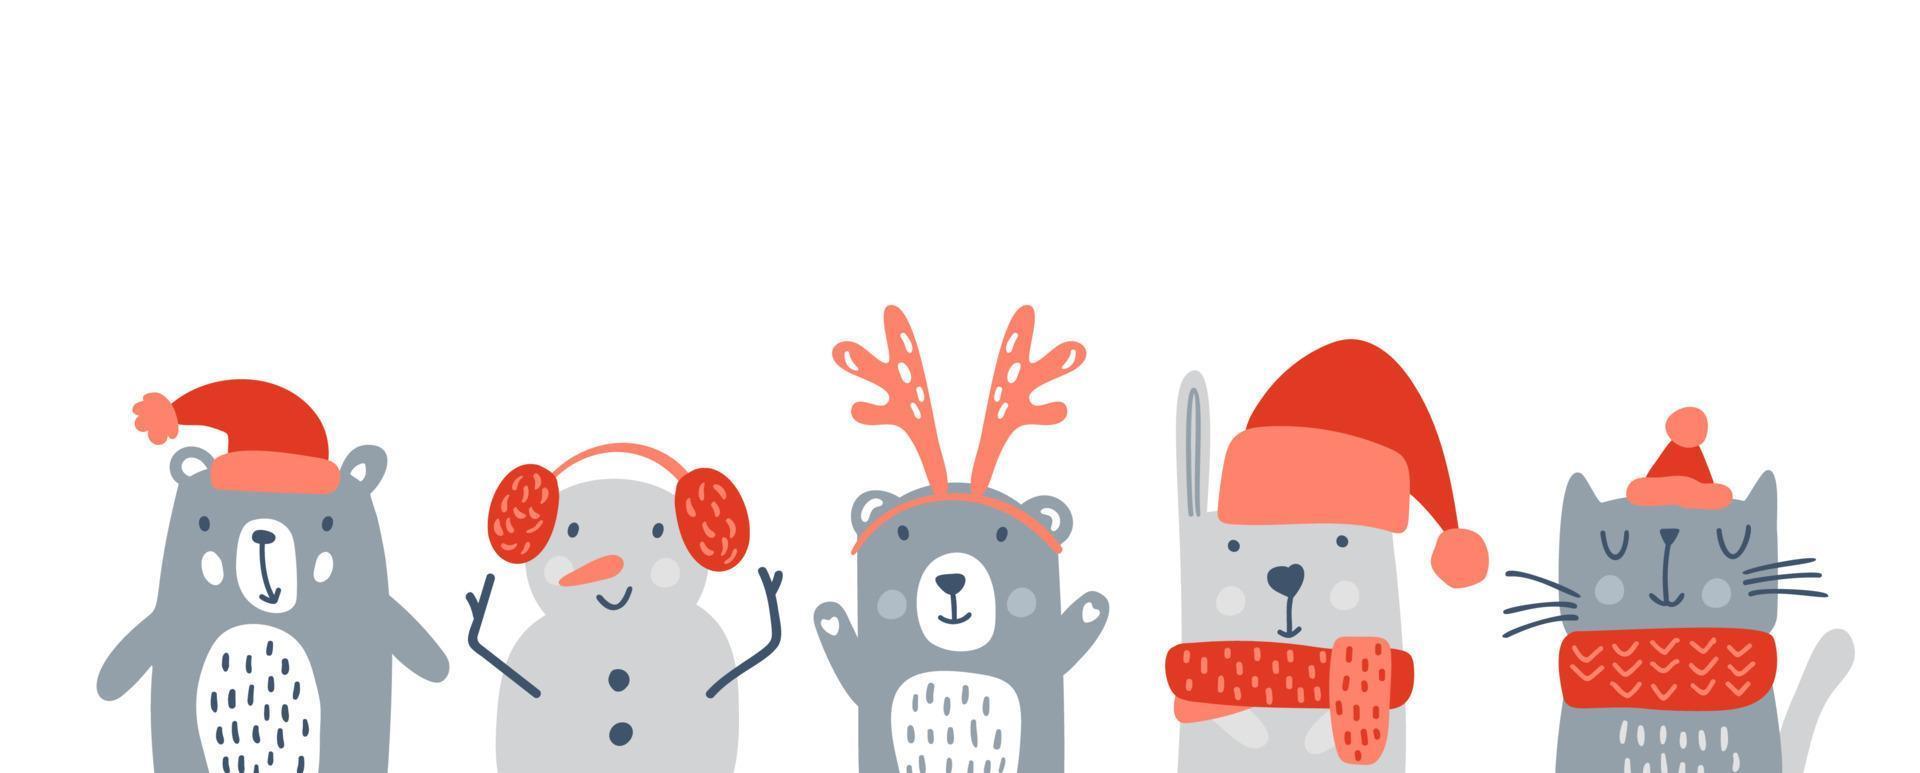 uppsättning av söta barn jul djur björn, snögubbe söt kanin och katt. vektor baby vinter illustration för barnkammare t-shirt, barn kläder, inbjudningskort, affisch. enkel skandinavisk barndesign